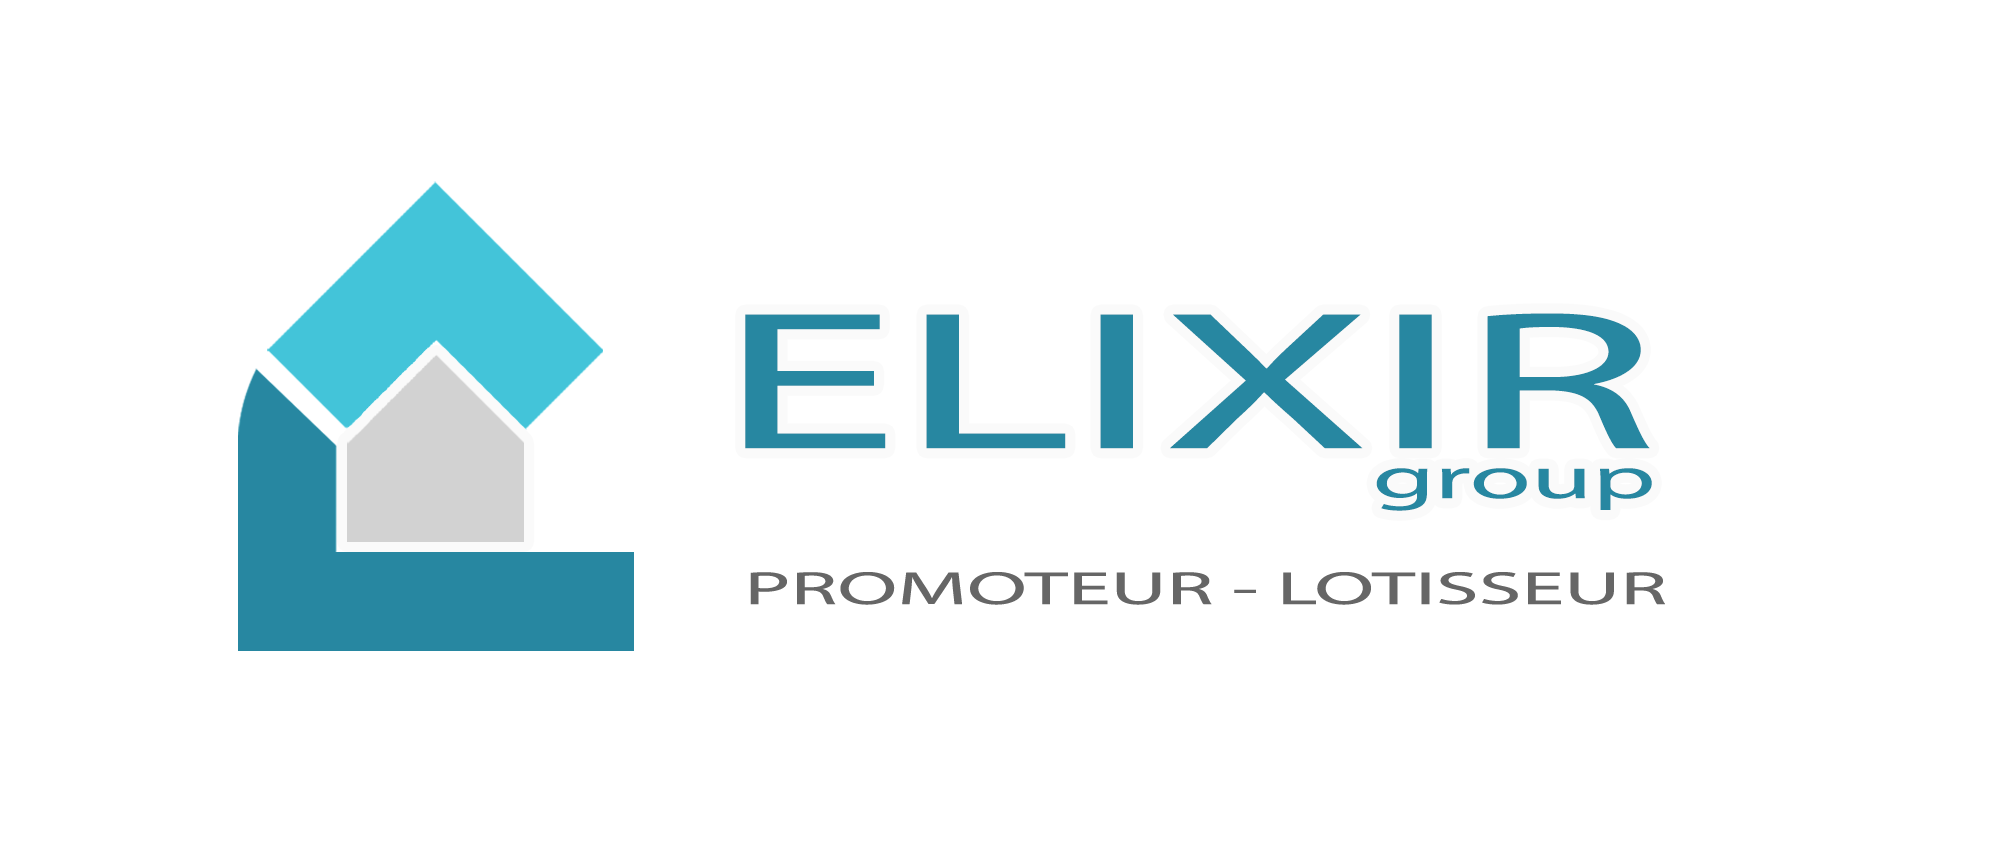 ELIXIR | Promoteur – Lotisseur